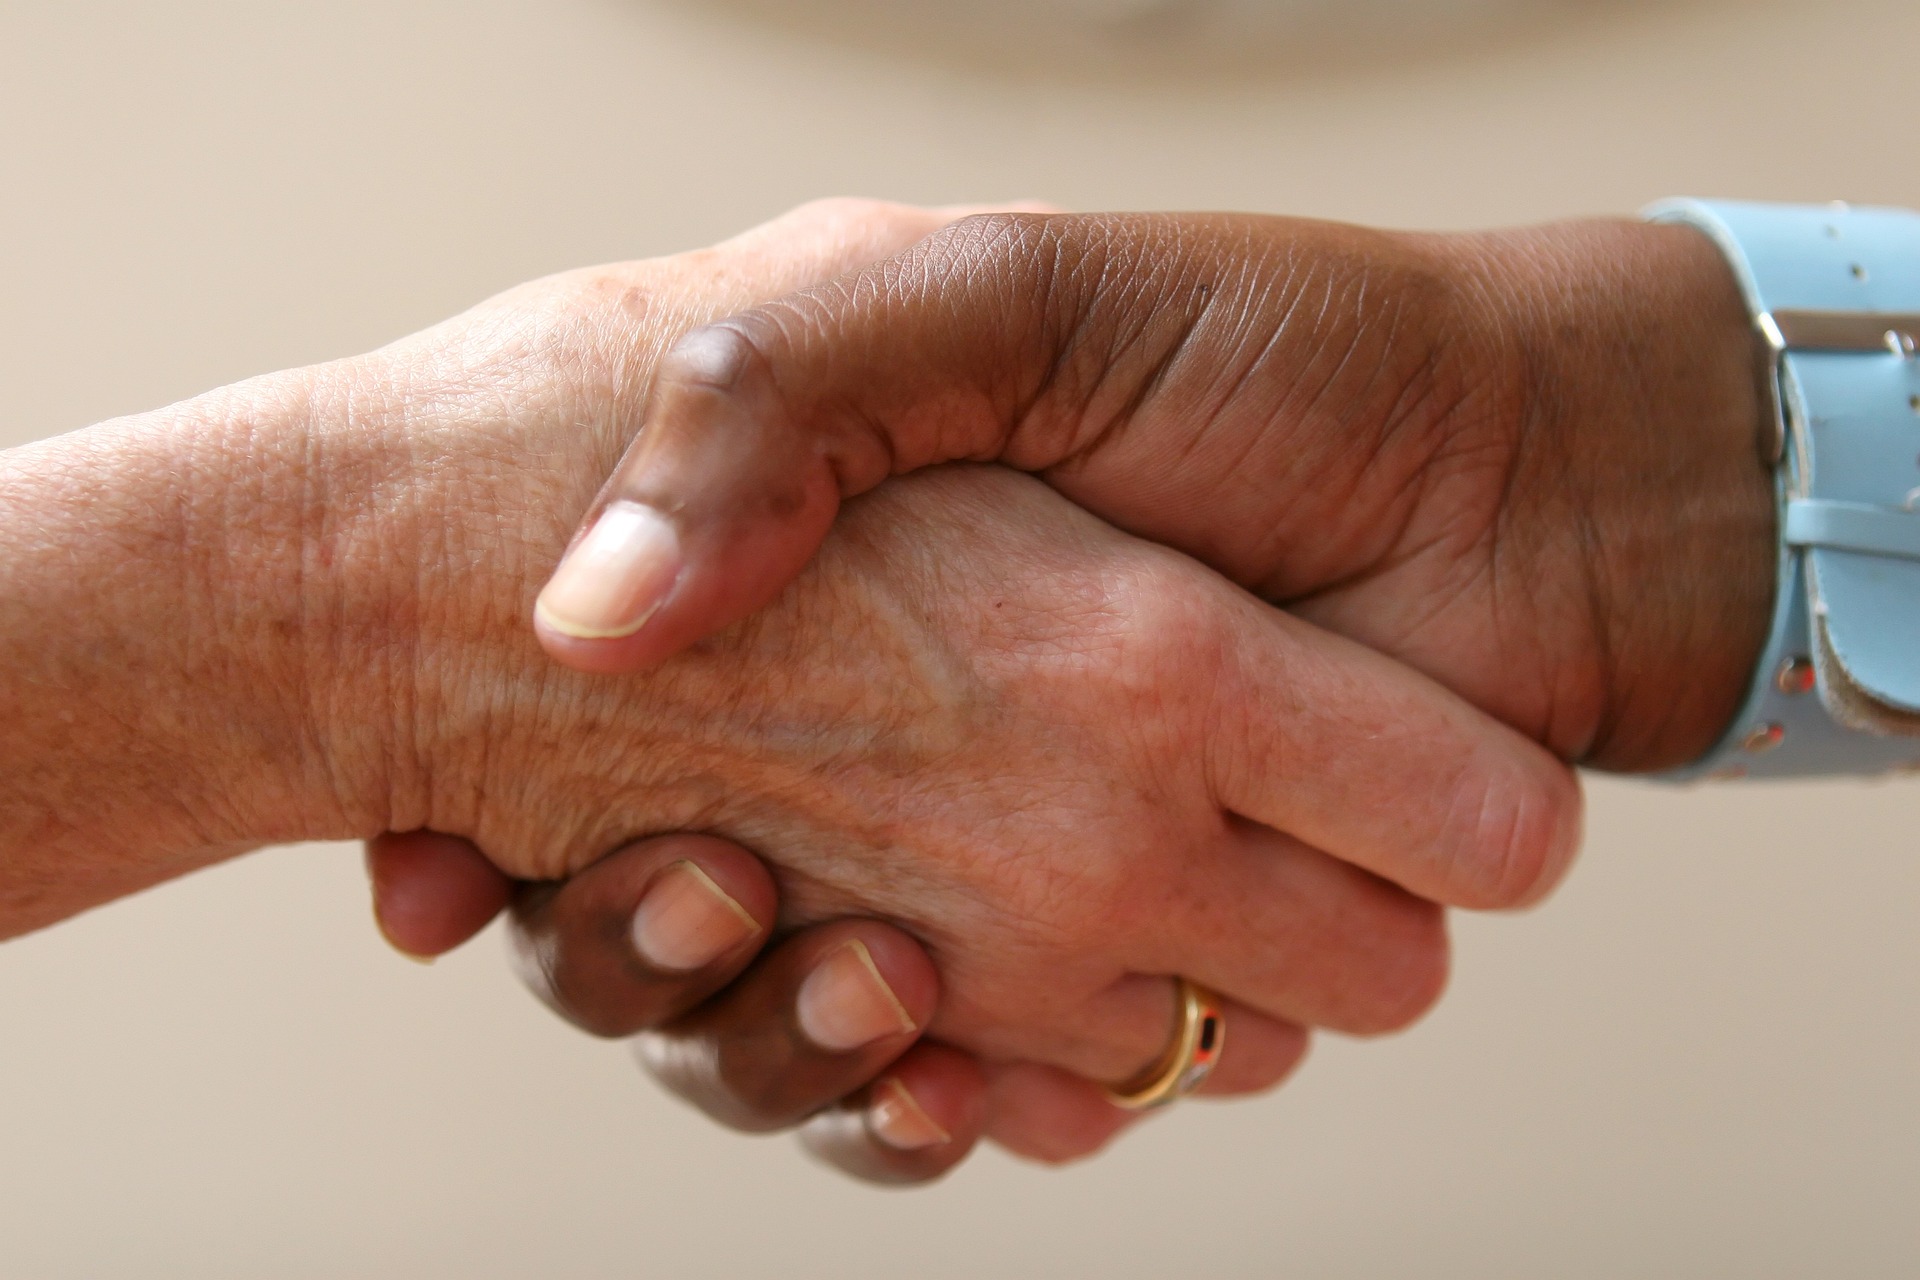 Handshake - Image by Robert Owen-Wahl, Pixabay